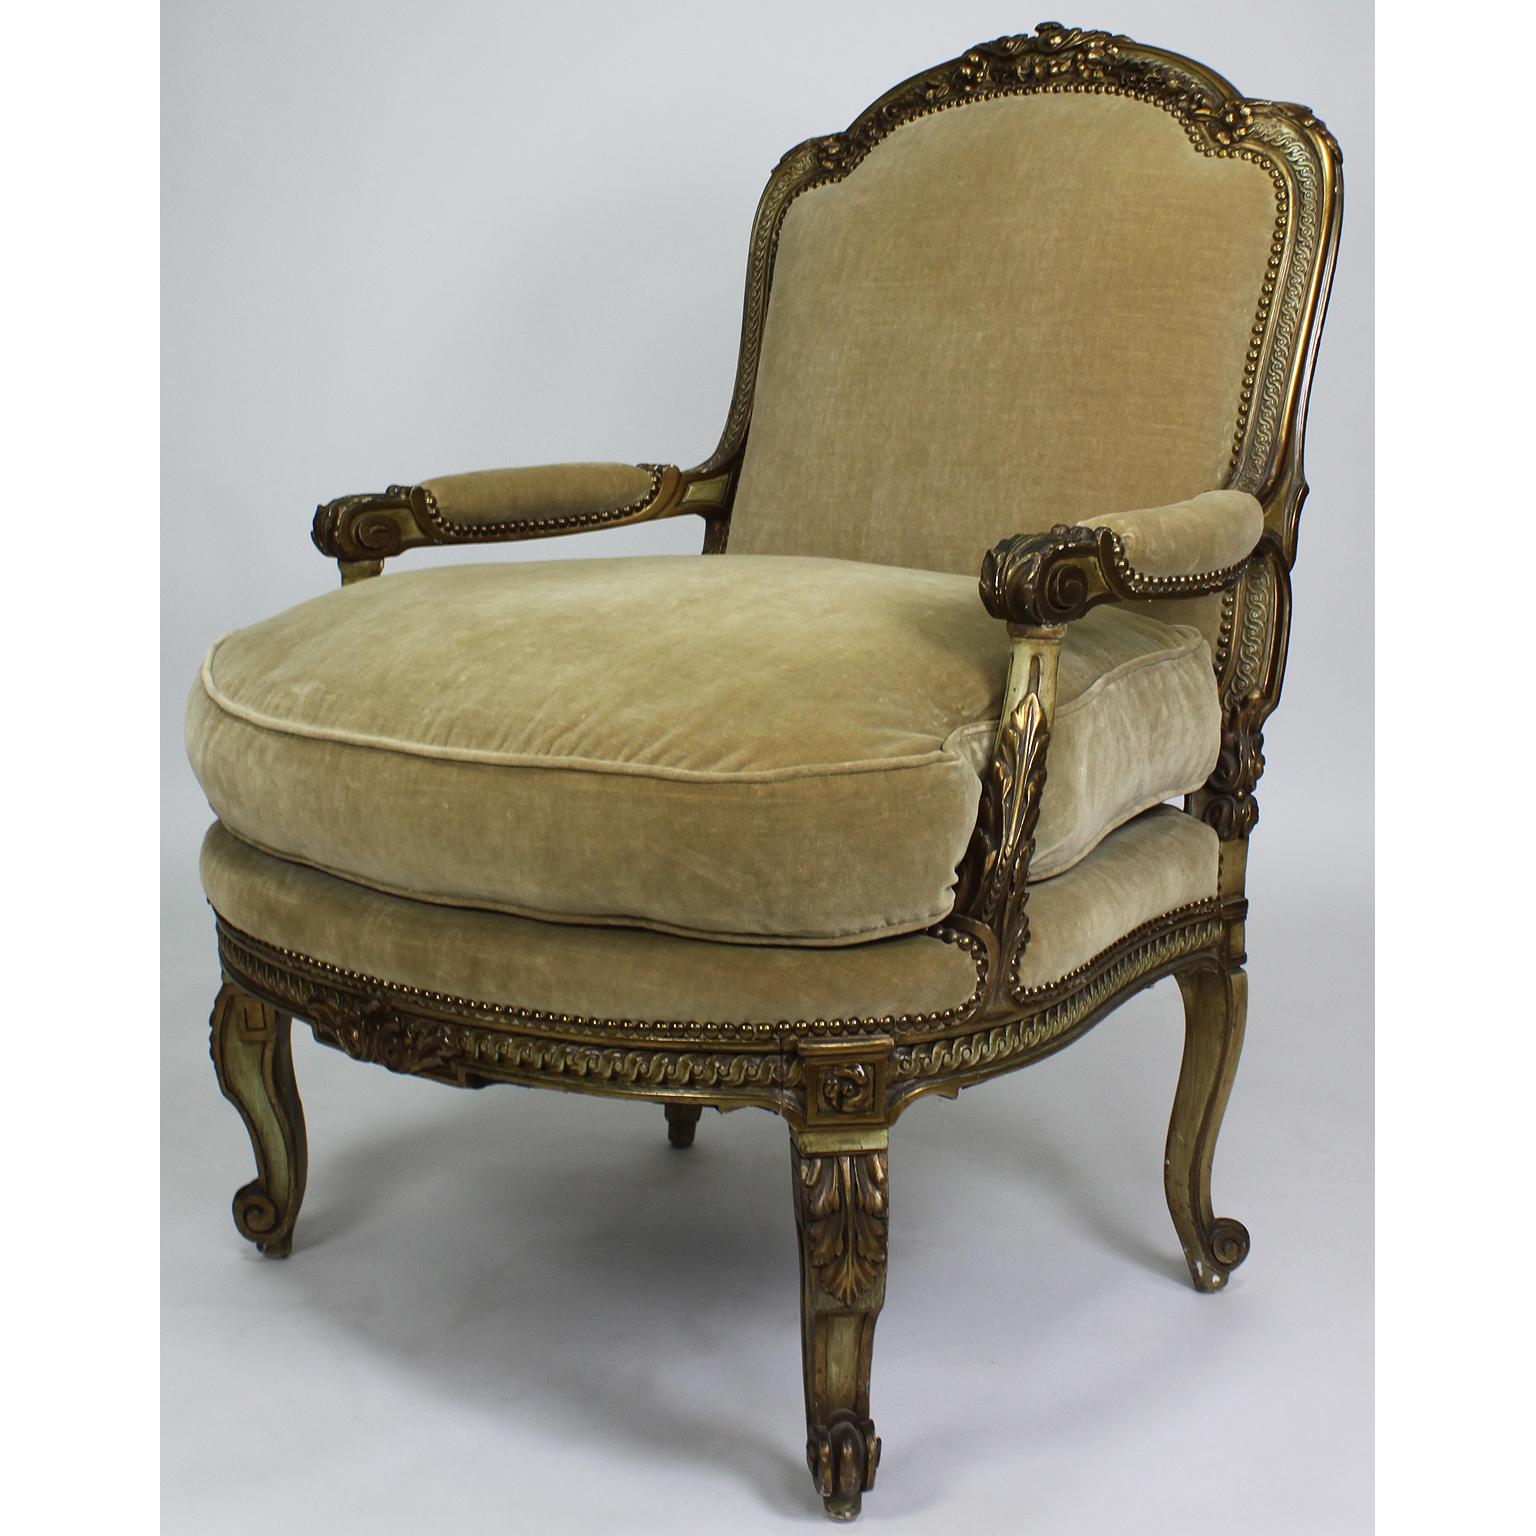 Ein feines Paar französischer vergoldeter und grün-cremefarben bemalter geschnitzter Fauteuils-Sessel im Stil von Louis XV, zugeschrieben Maison Jansen. Die gewölbte Rückenlehne ist mit geschnitzten Blumen und offenen Armlehnen gekrönt und steht auf